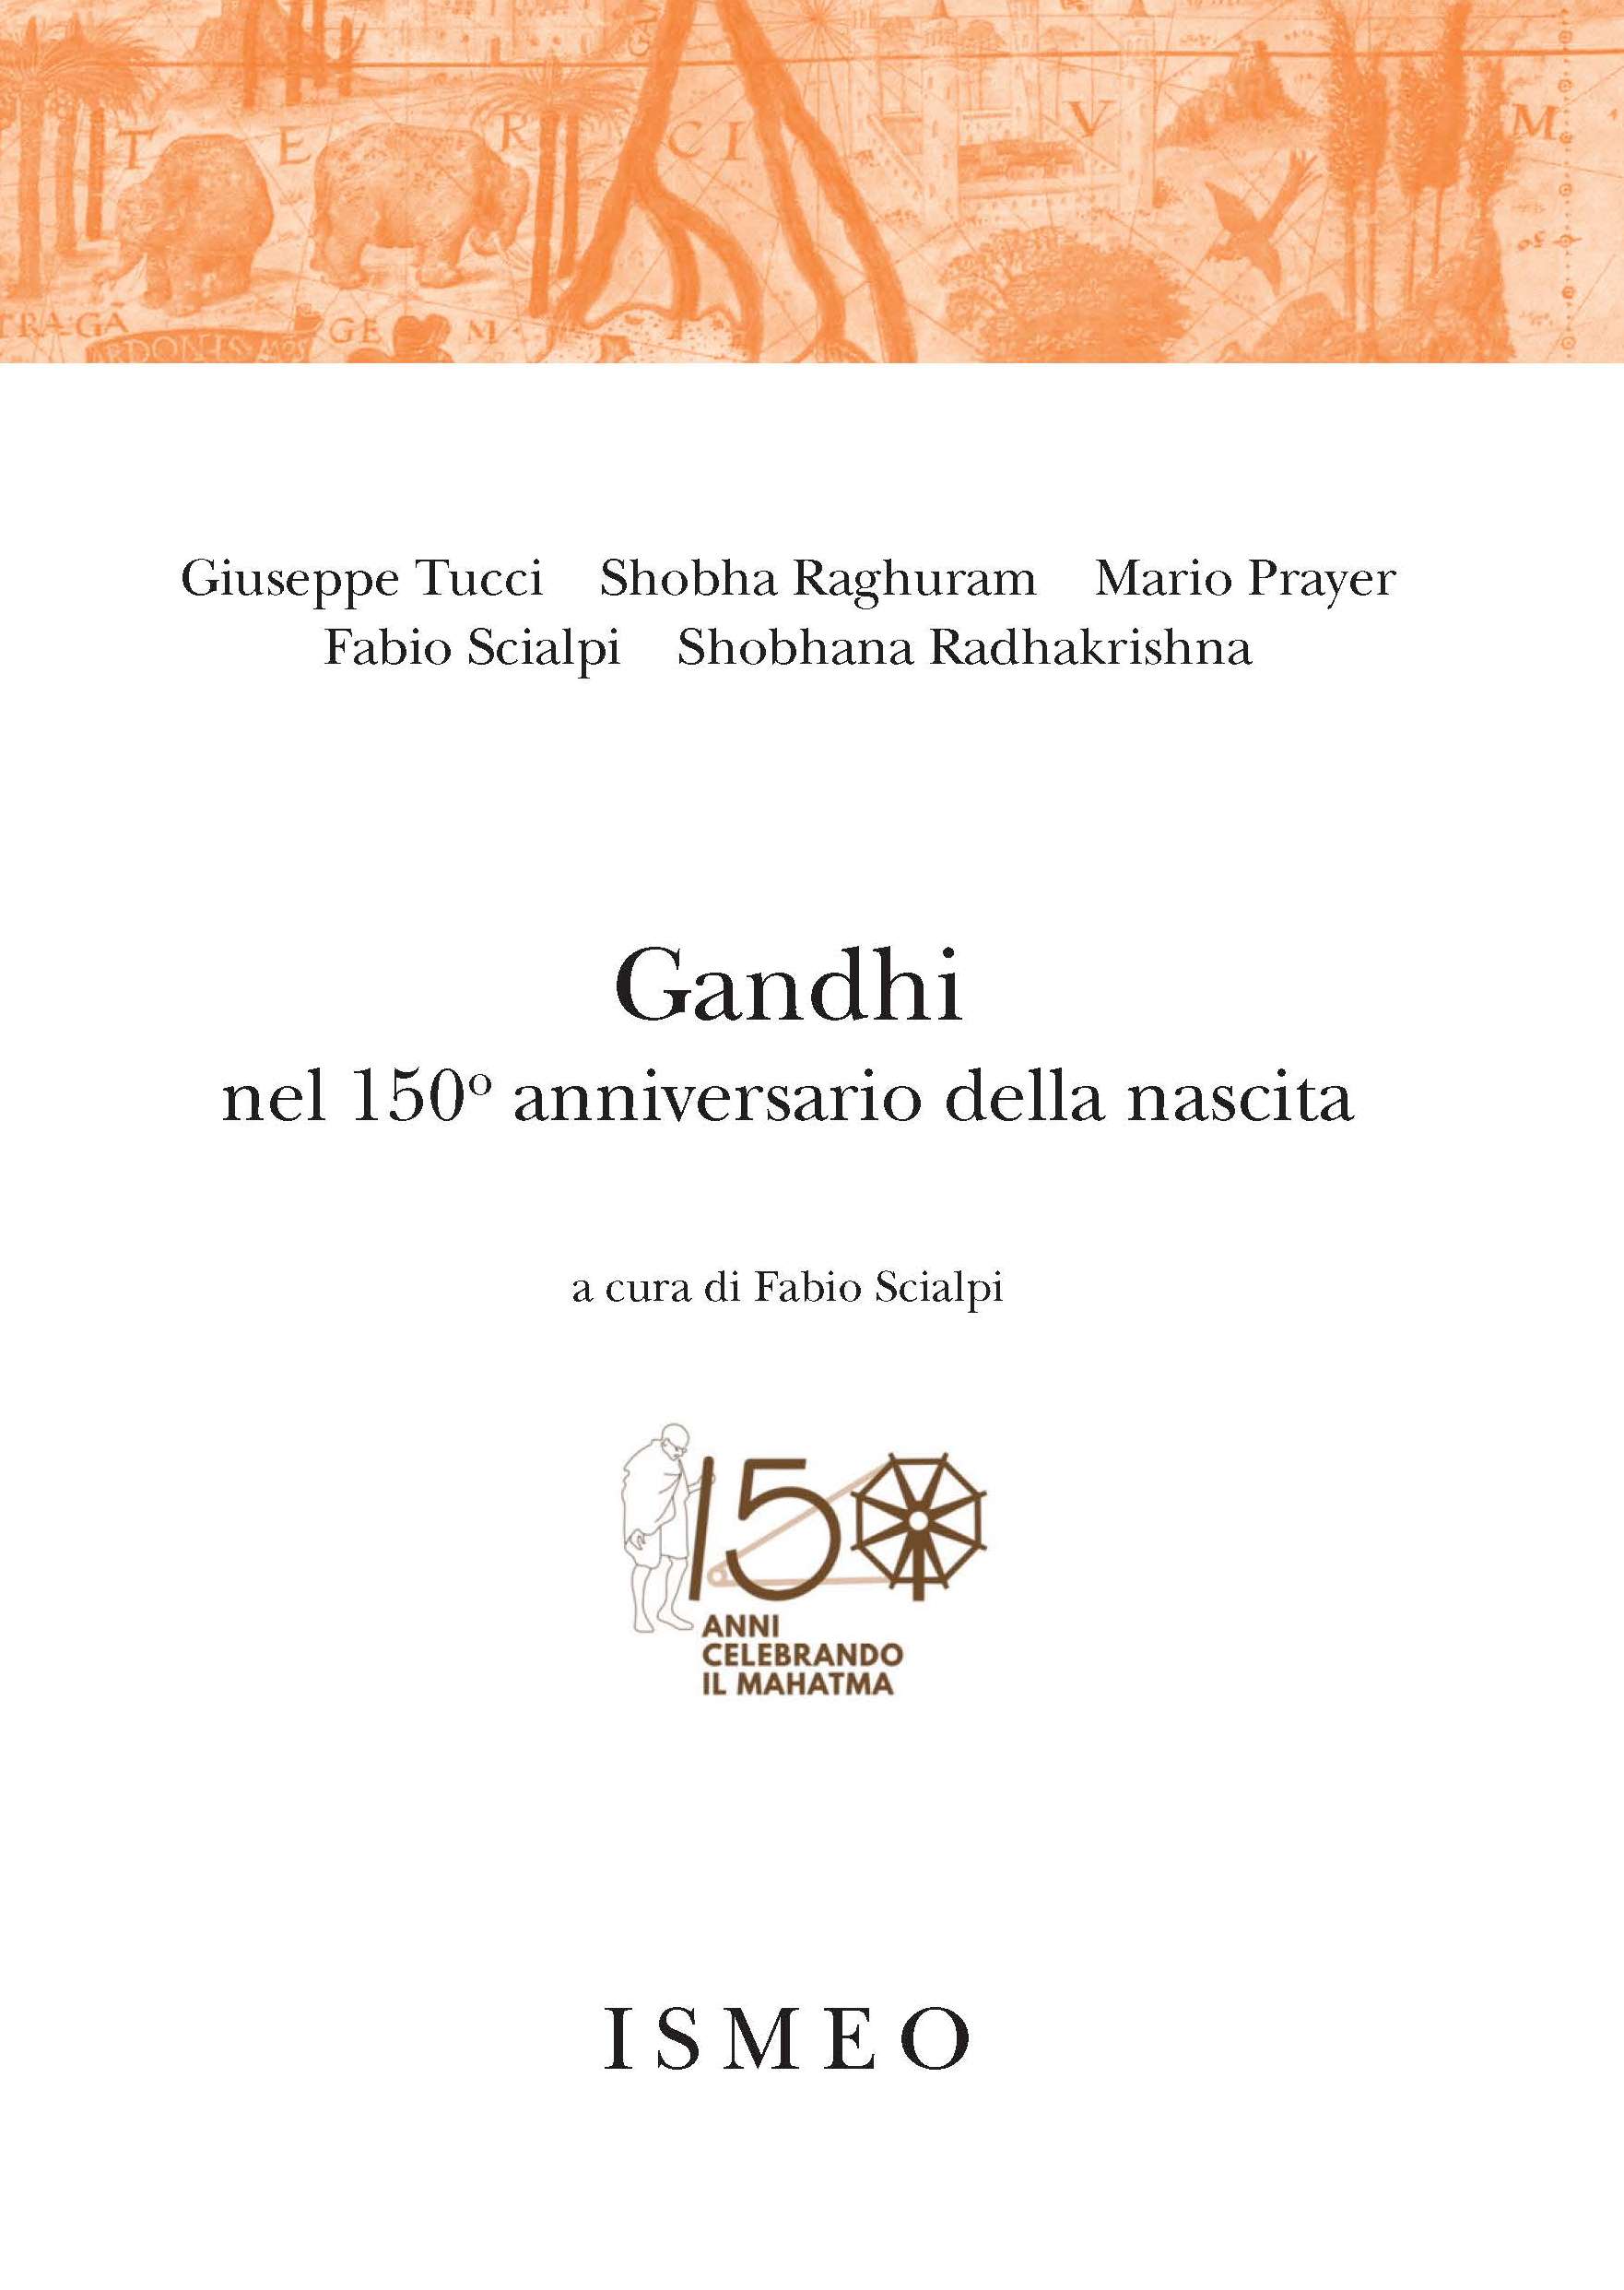 Gandhi
nel 150o anniversario della nascita - Il Novissimo Ramusio 11